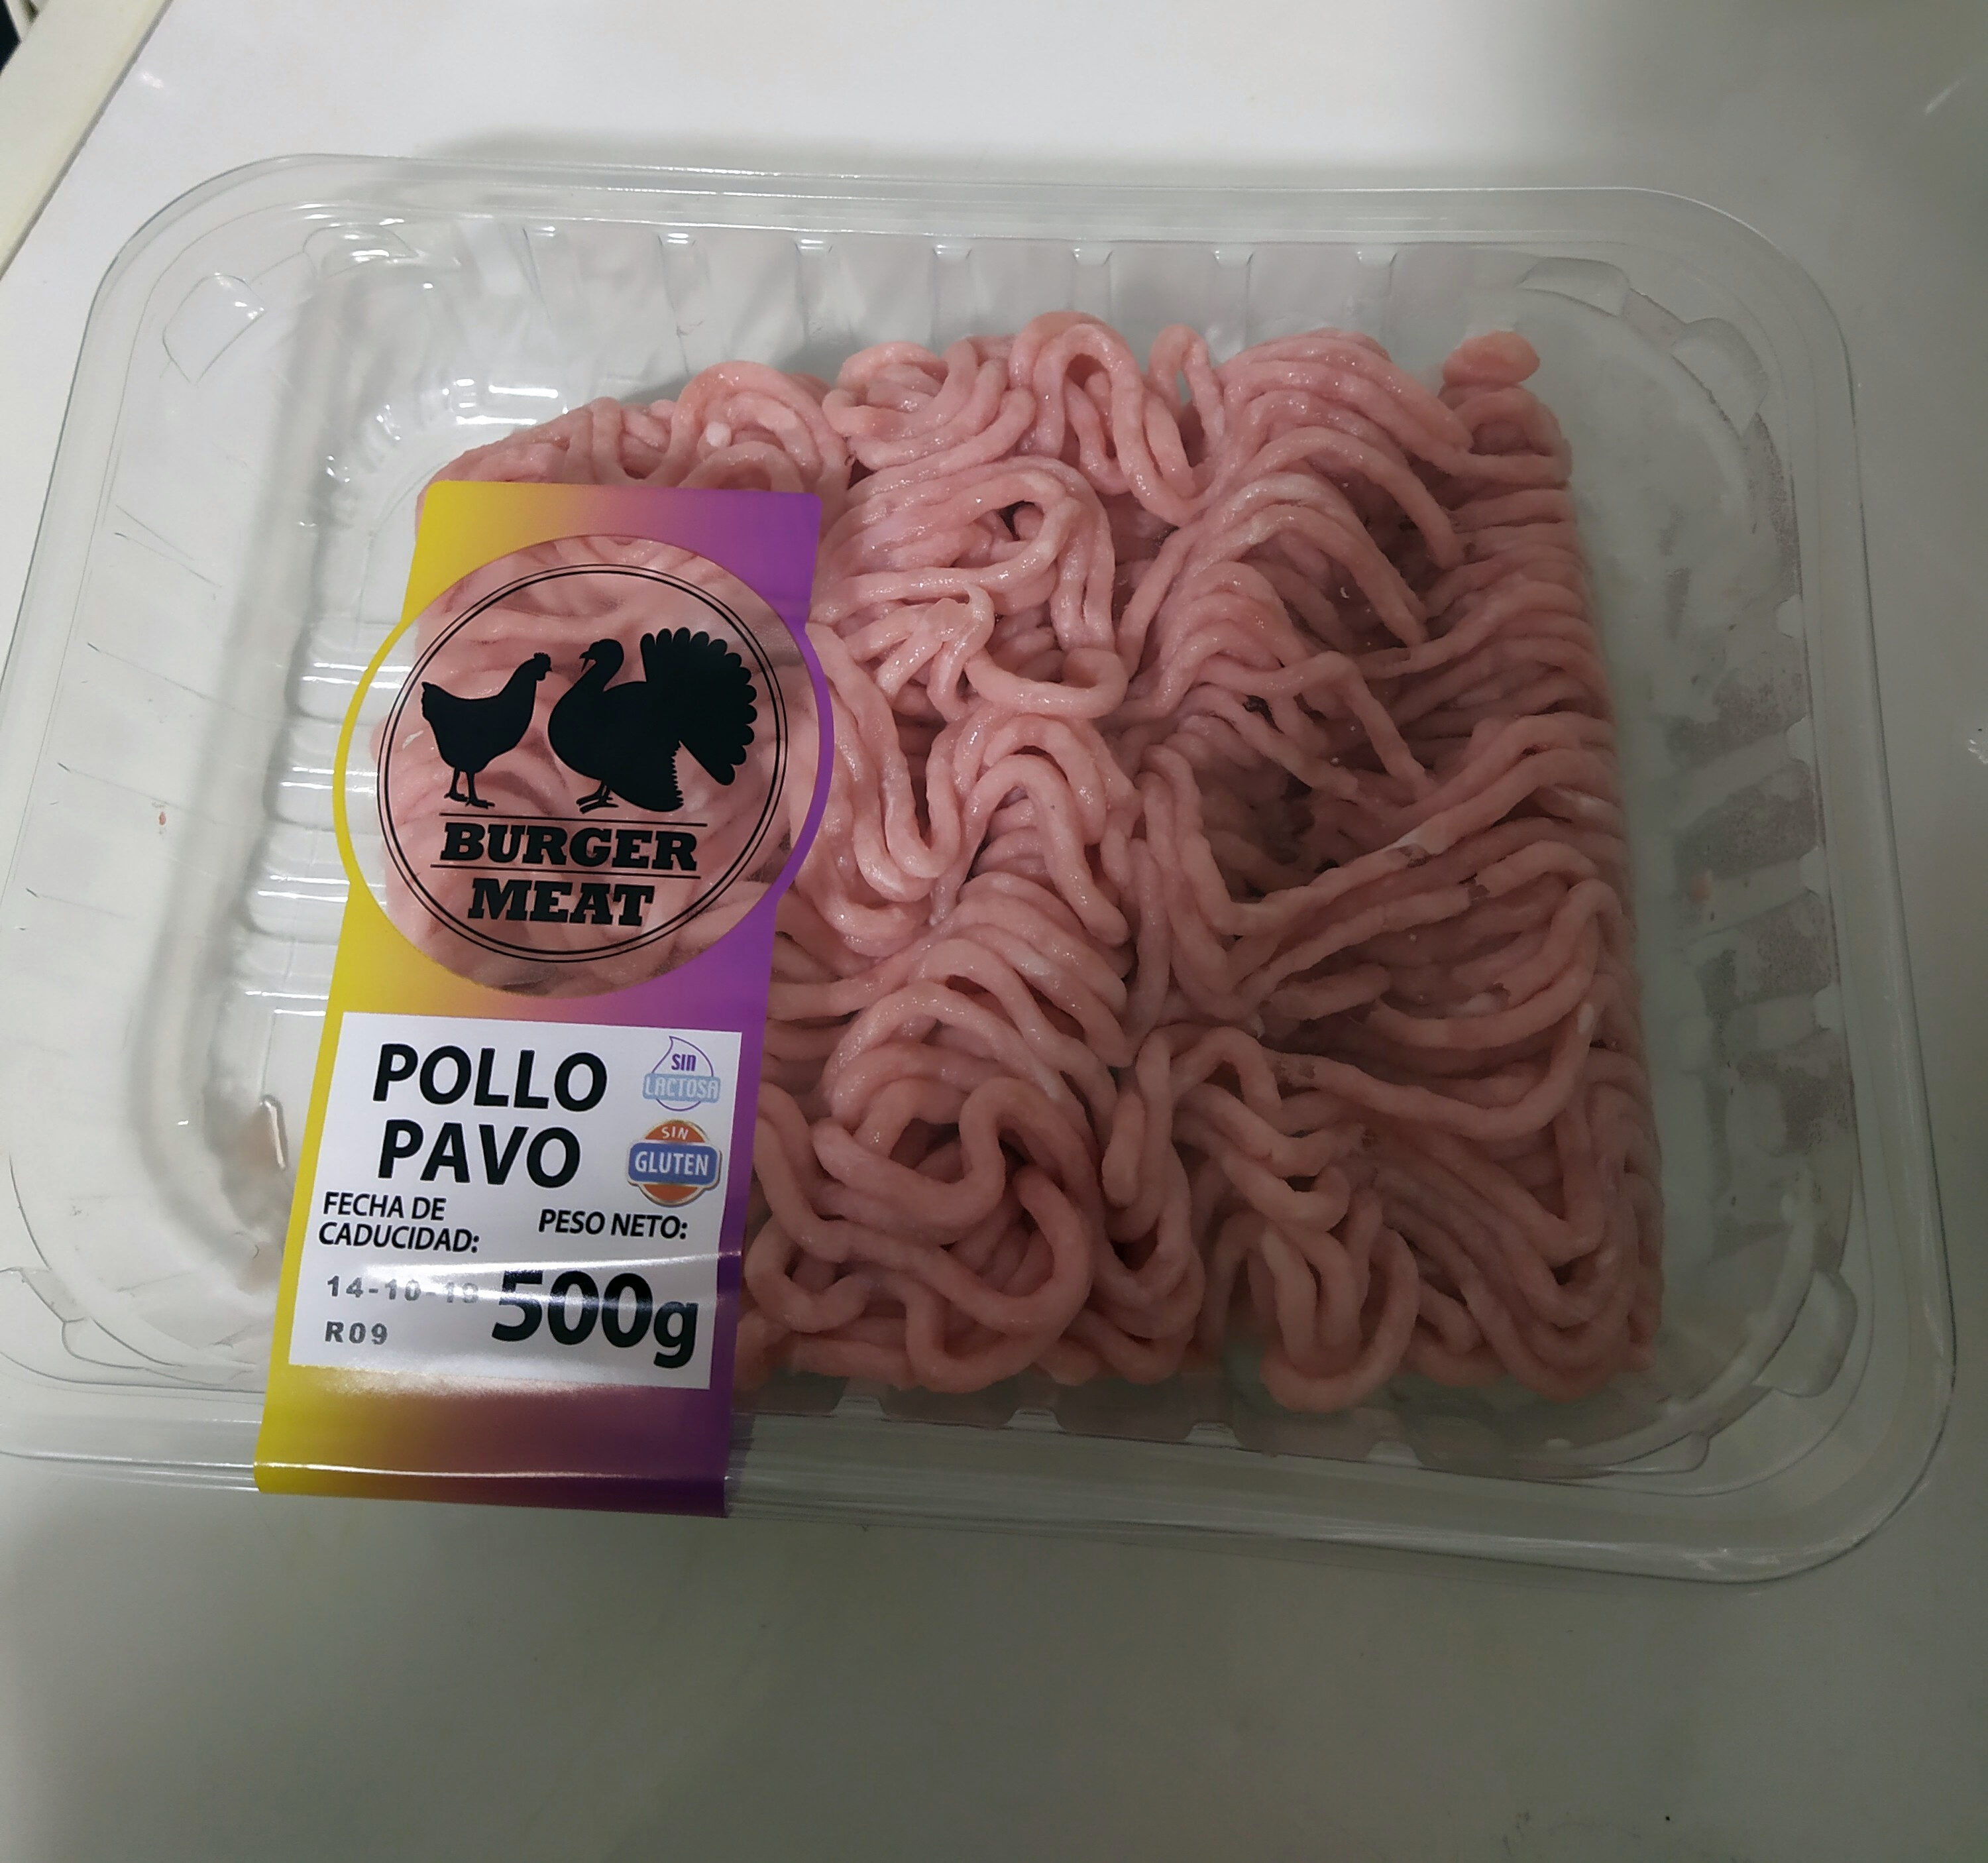 Burger meat pollo pavo - Producte - es